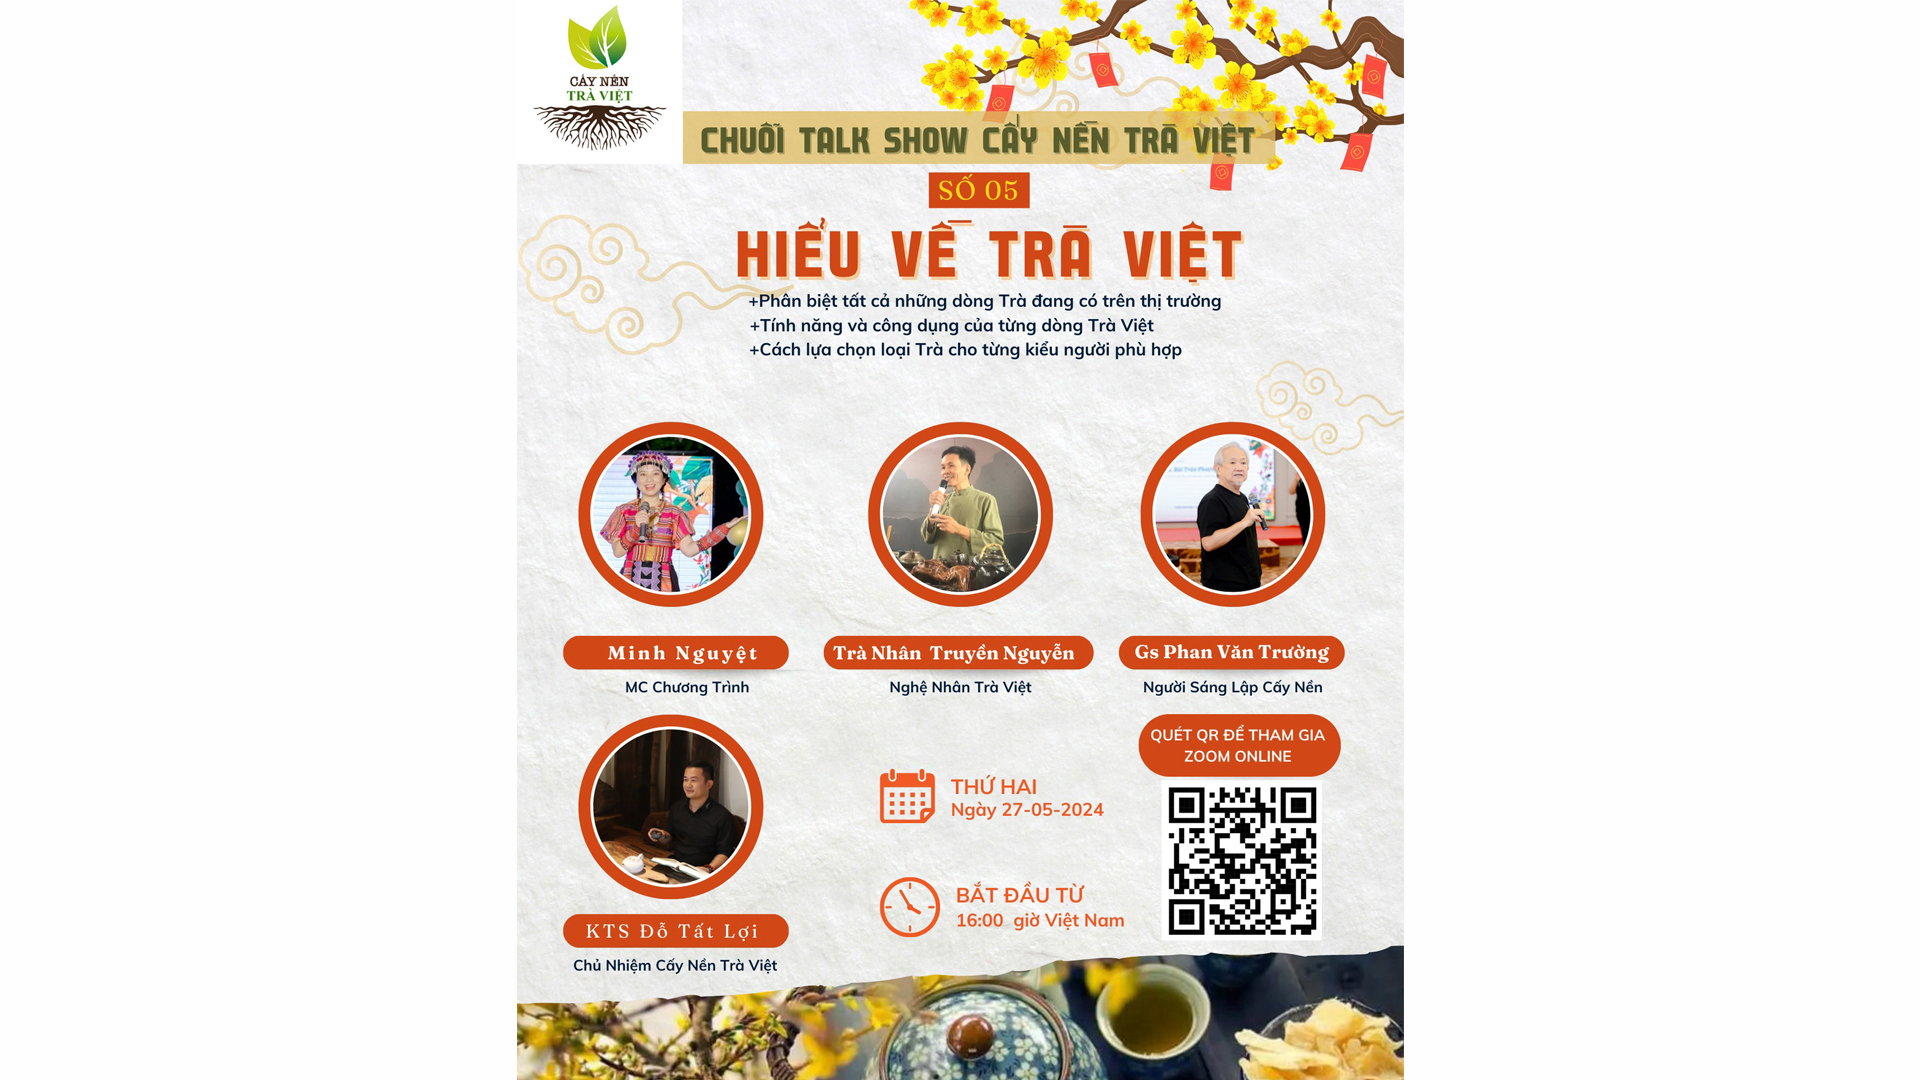 Hiểu về Trà Việt